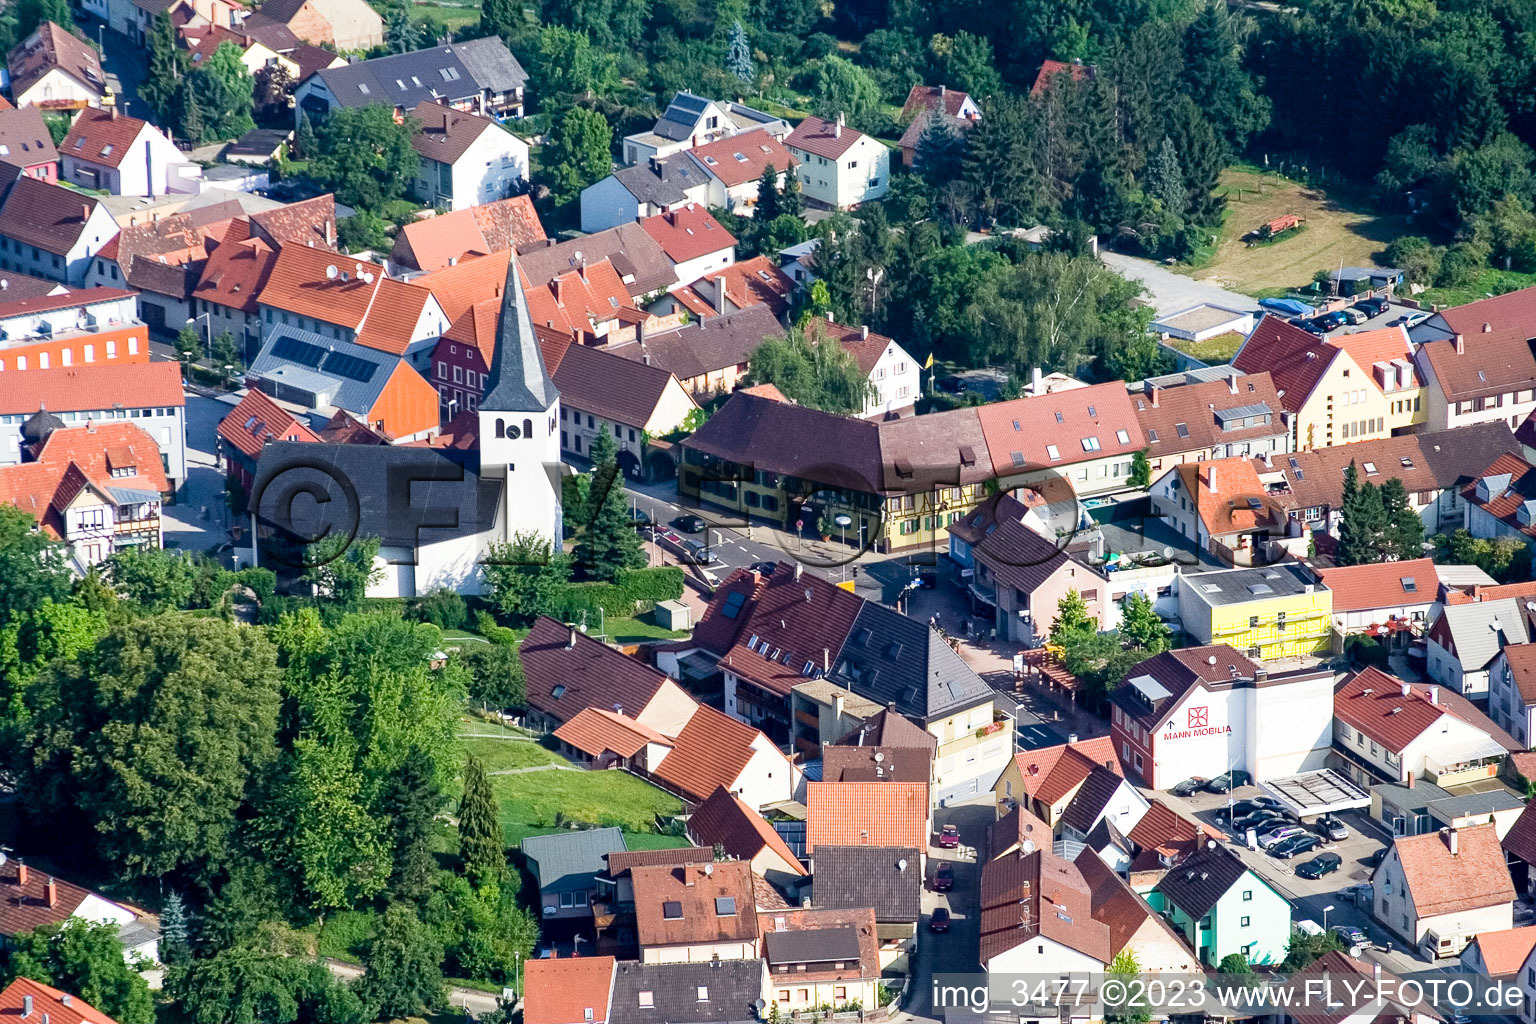 Vue aérienne de L'église Saint-Martin à le quartier Berghausen in Pfinztal dans le département Bade-Wurtemberg, Allemagne